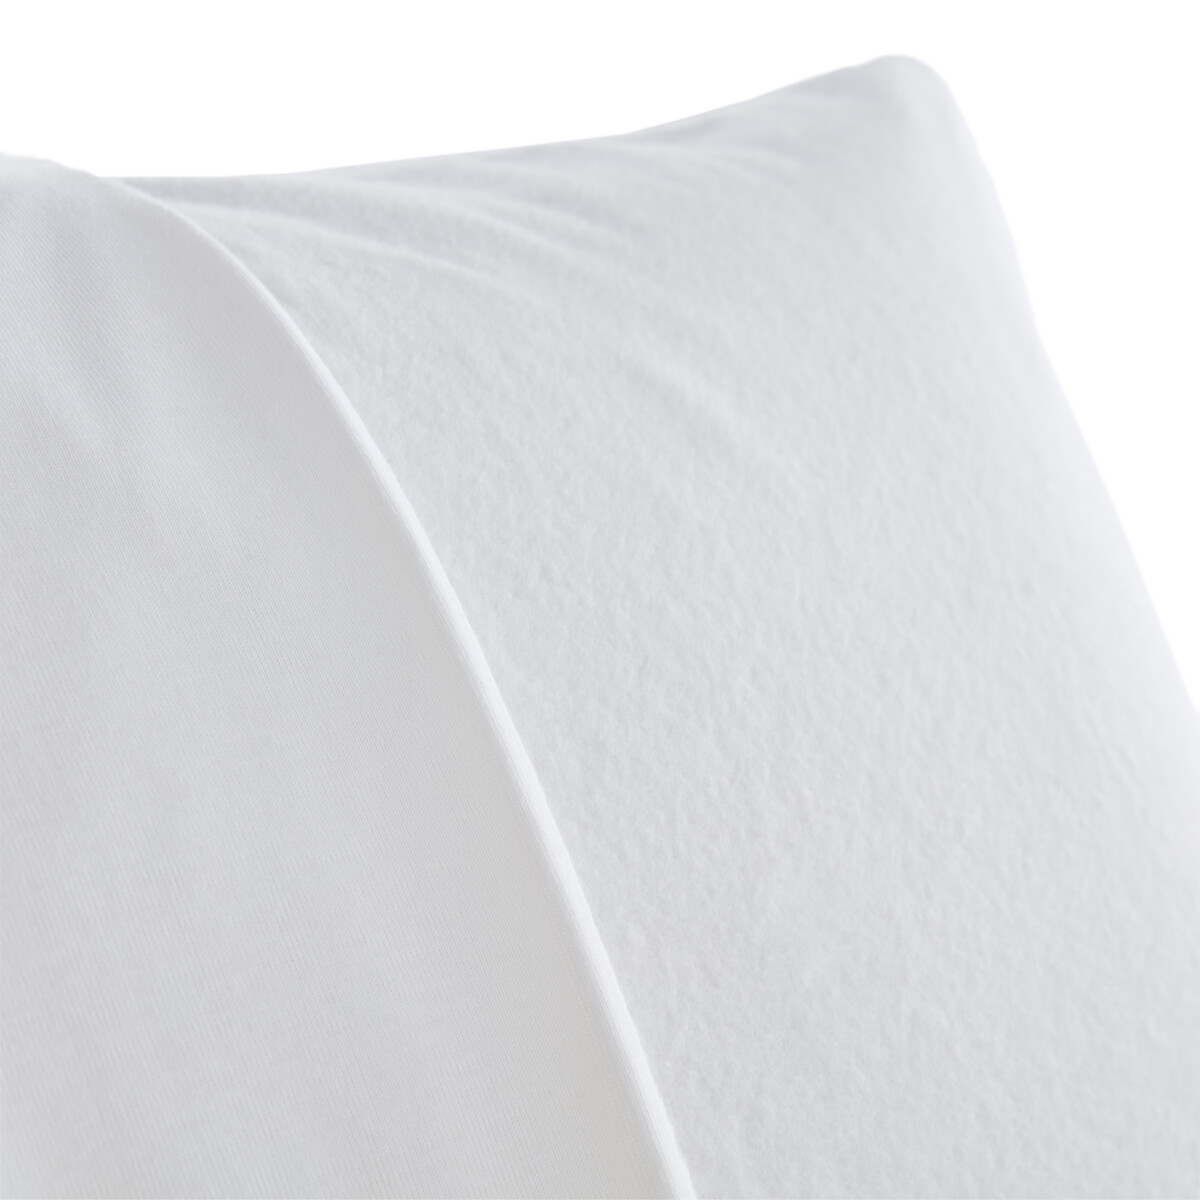 Чехол La Redoute Защитный на подушку из мольтона с обработкой Teflon против пятен 40 x 60 см белый, размер 40 x 60 см - фото 2